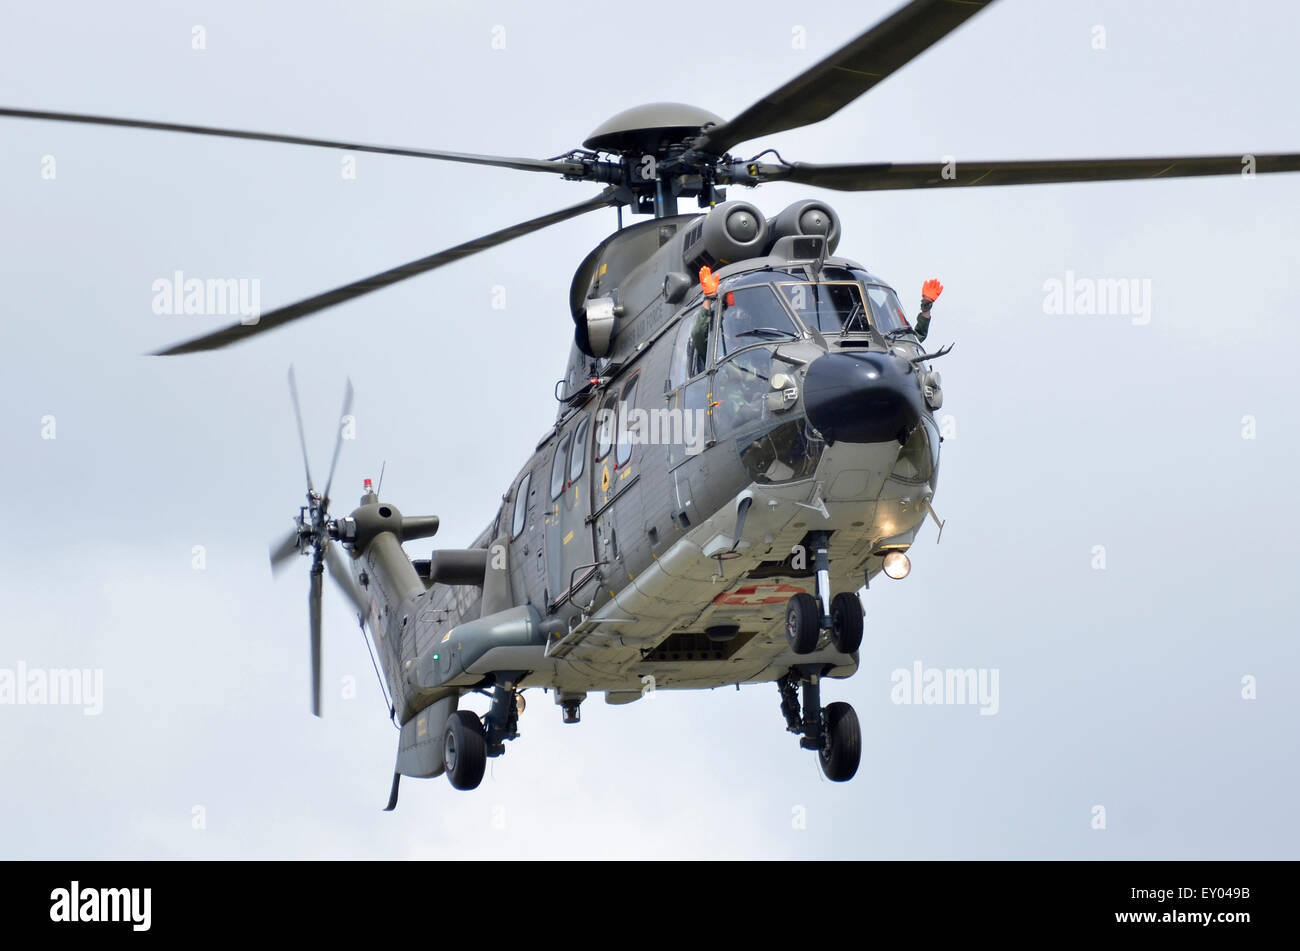 Eurocopter AS232 hélicoptère Super Puma exploités par la Force aérienne suisse afficher Au RIAT 2015, avec à la fois pilote et co-pilote en agitant à la foule. Crédit : Antony l'ortie/Alamy Live News Banque D'Images